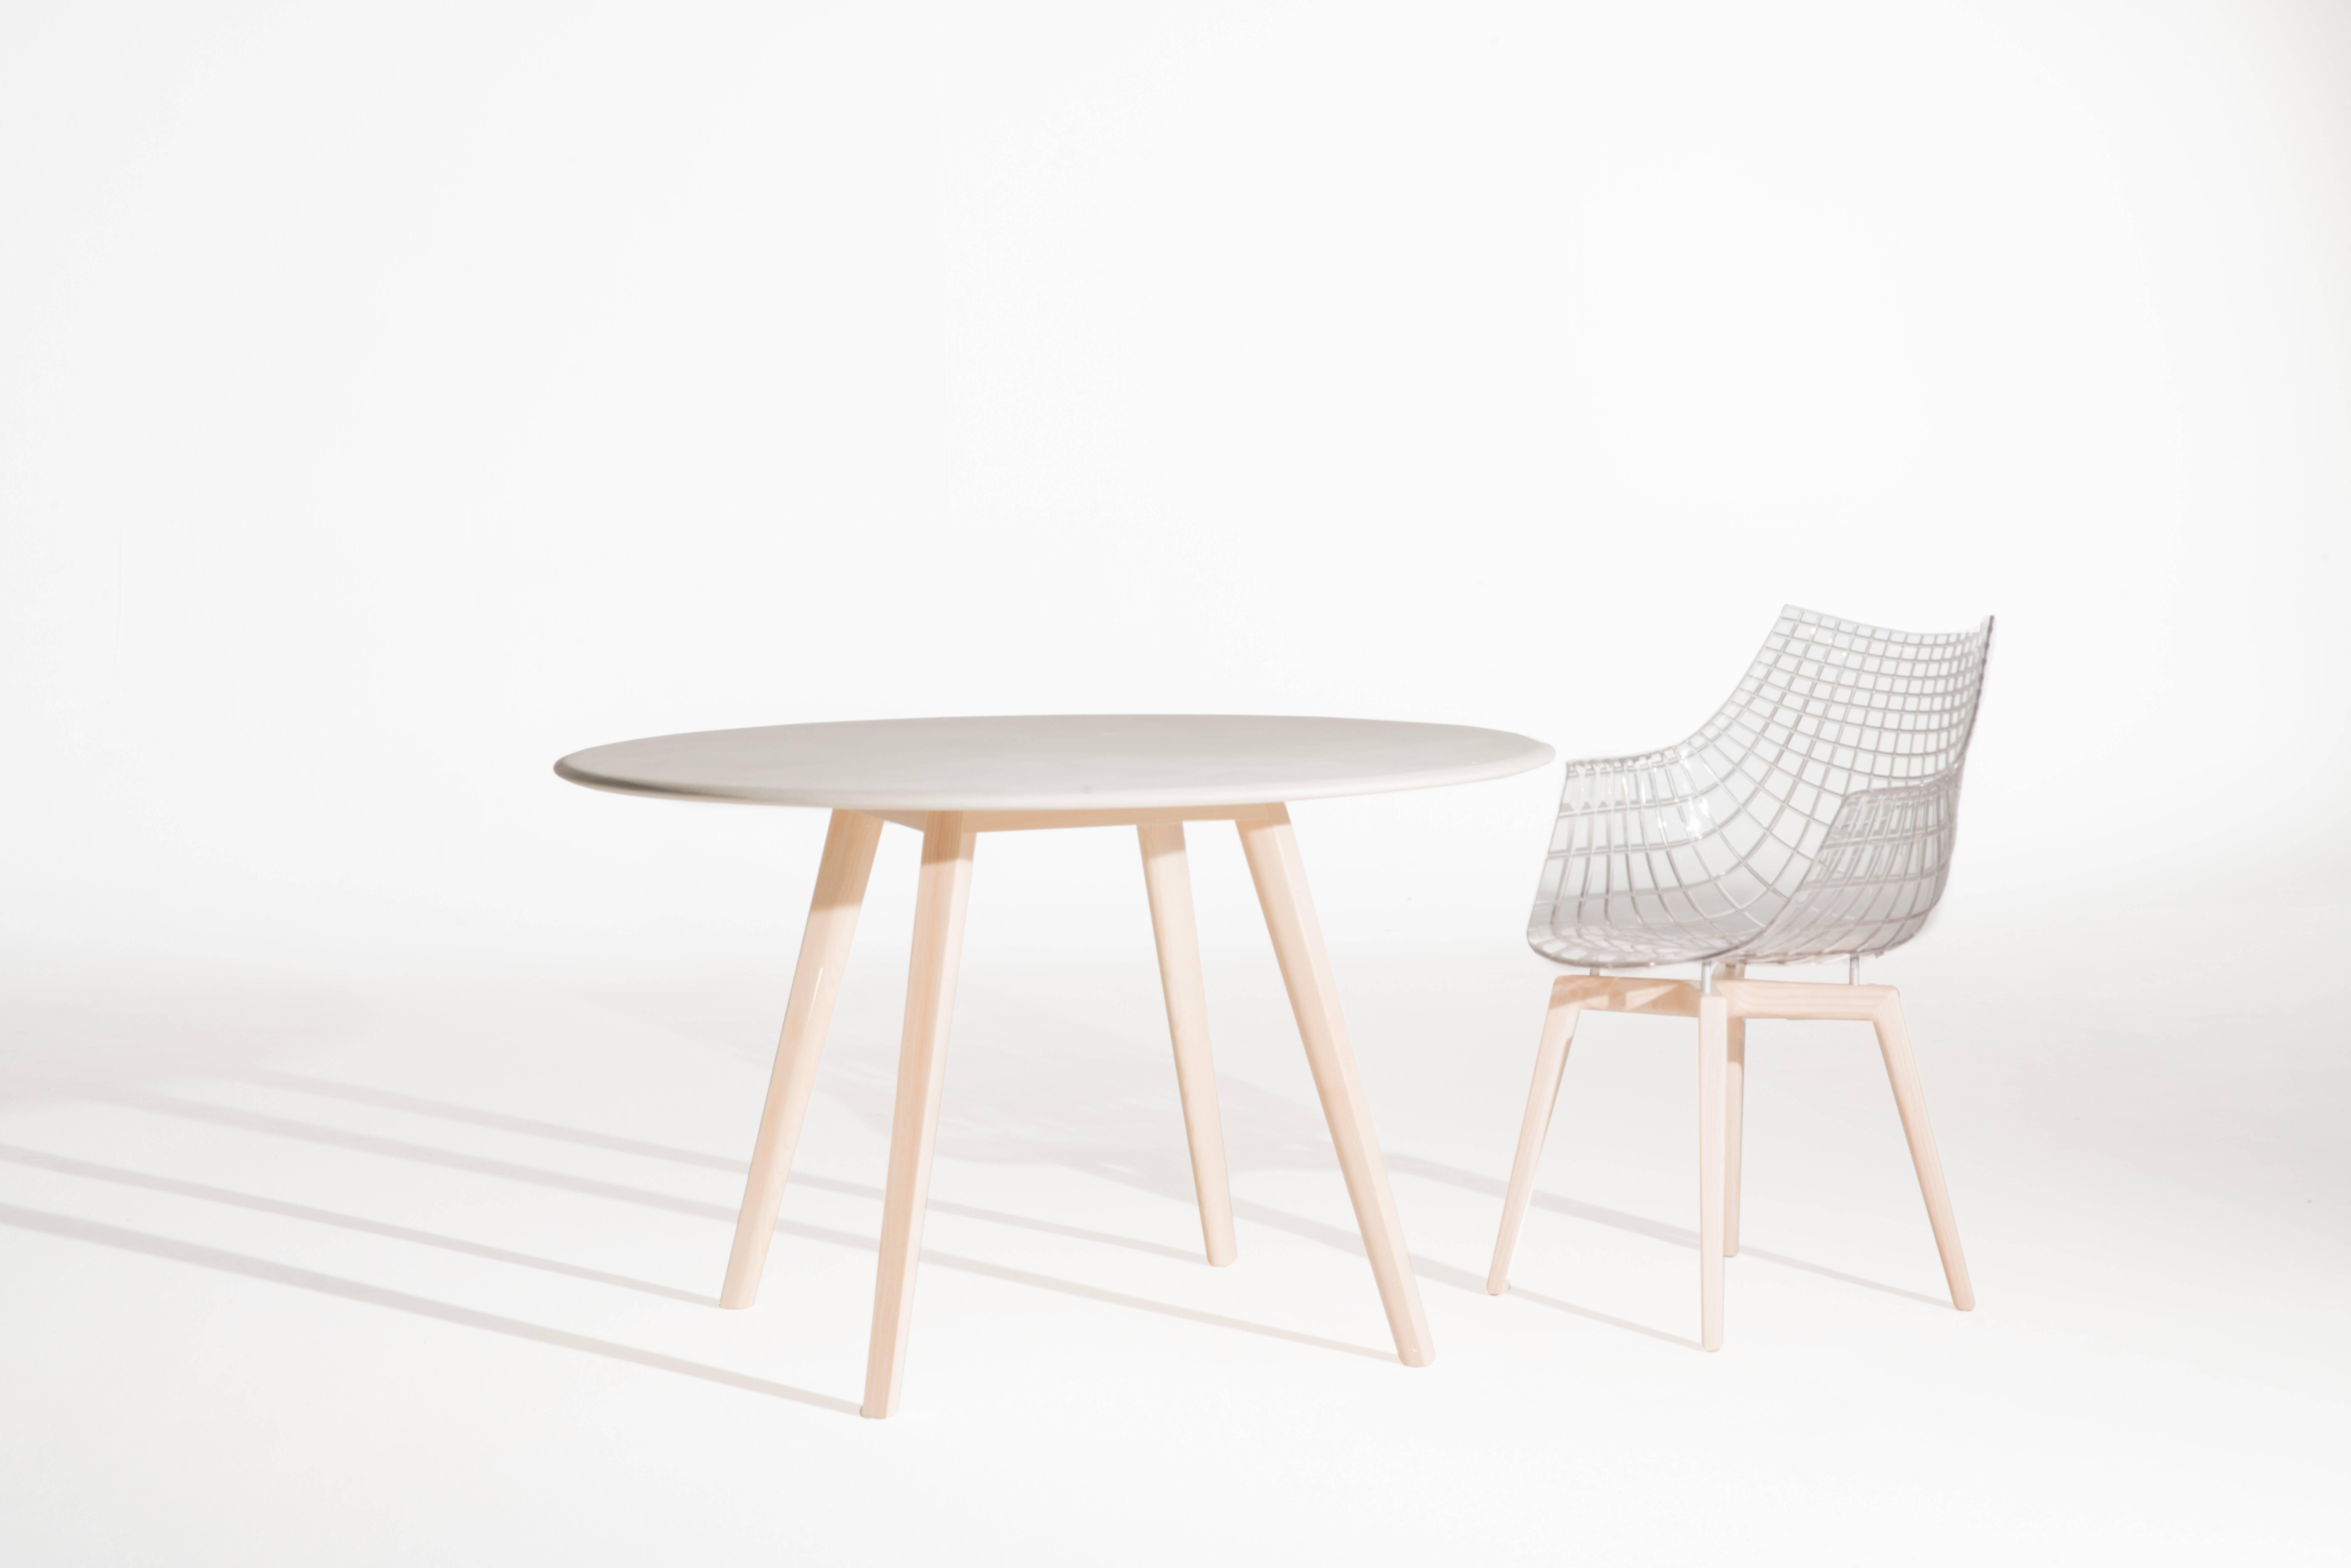 Der Tisch Meridiana geht auf den ultimativen Globetrotter-Stuhl zurück und wurde dieses Jahr mit massiven Holzbeinen überarbeitet. Als Archetyp des Tisches für Café- oder Zuhause zeigt er ein wertvolles Gleichgewicht zwischen der runden